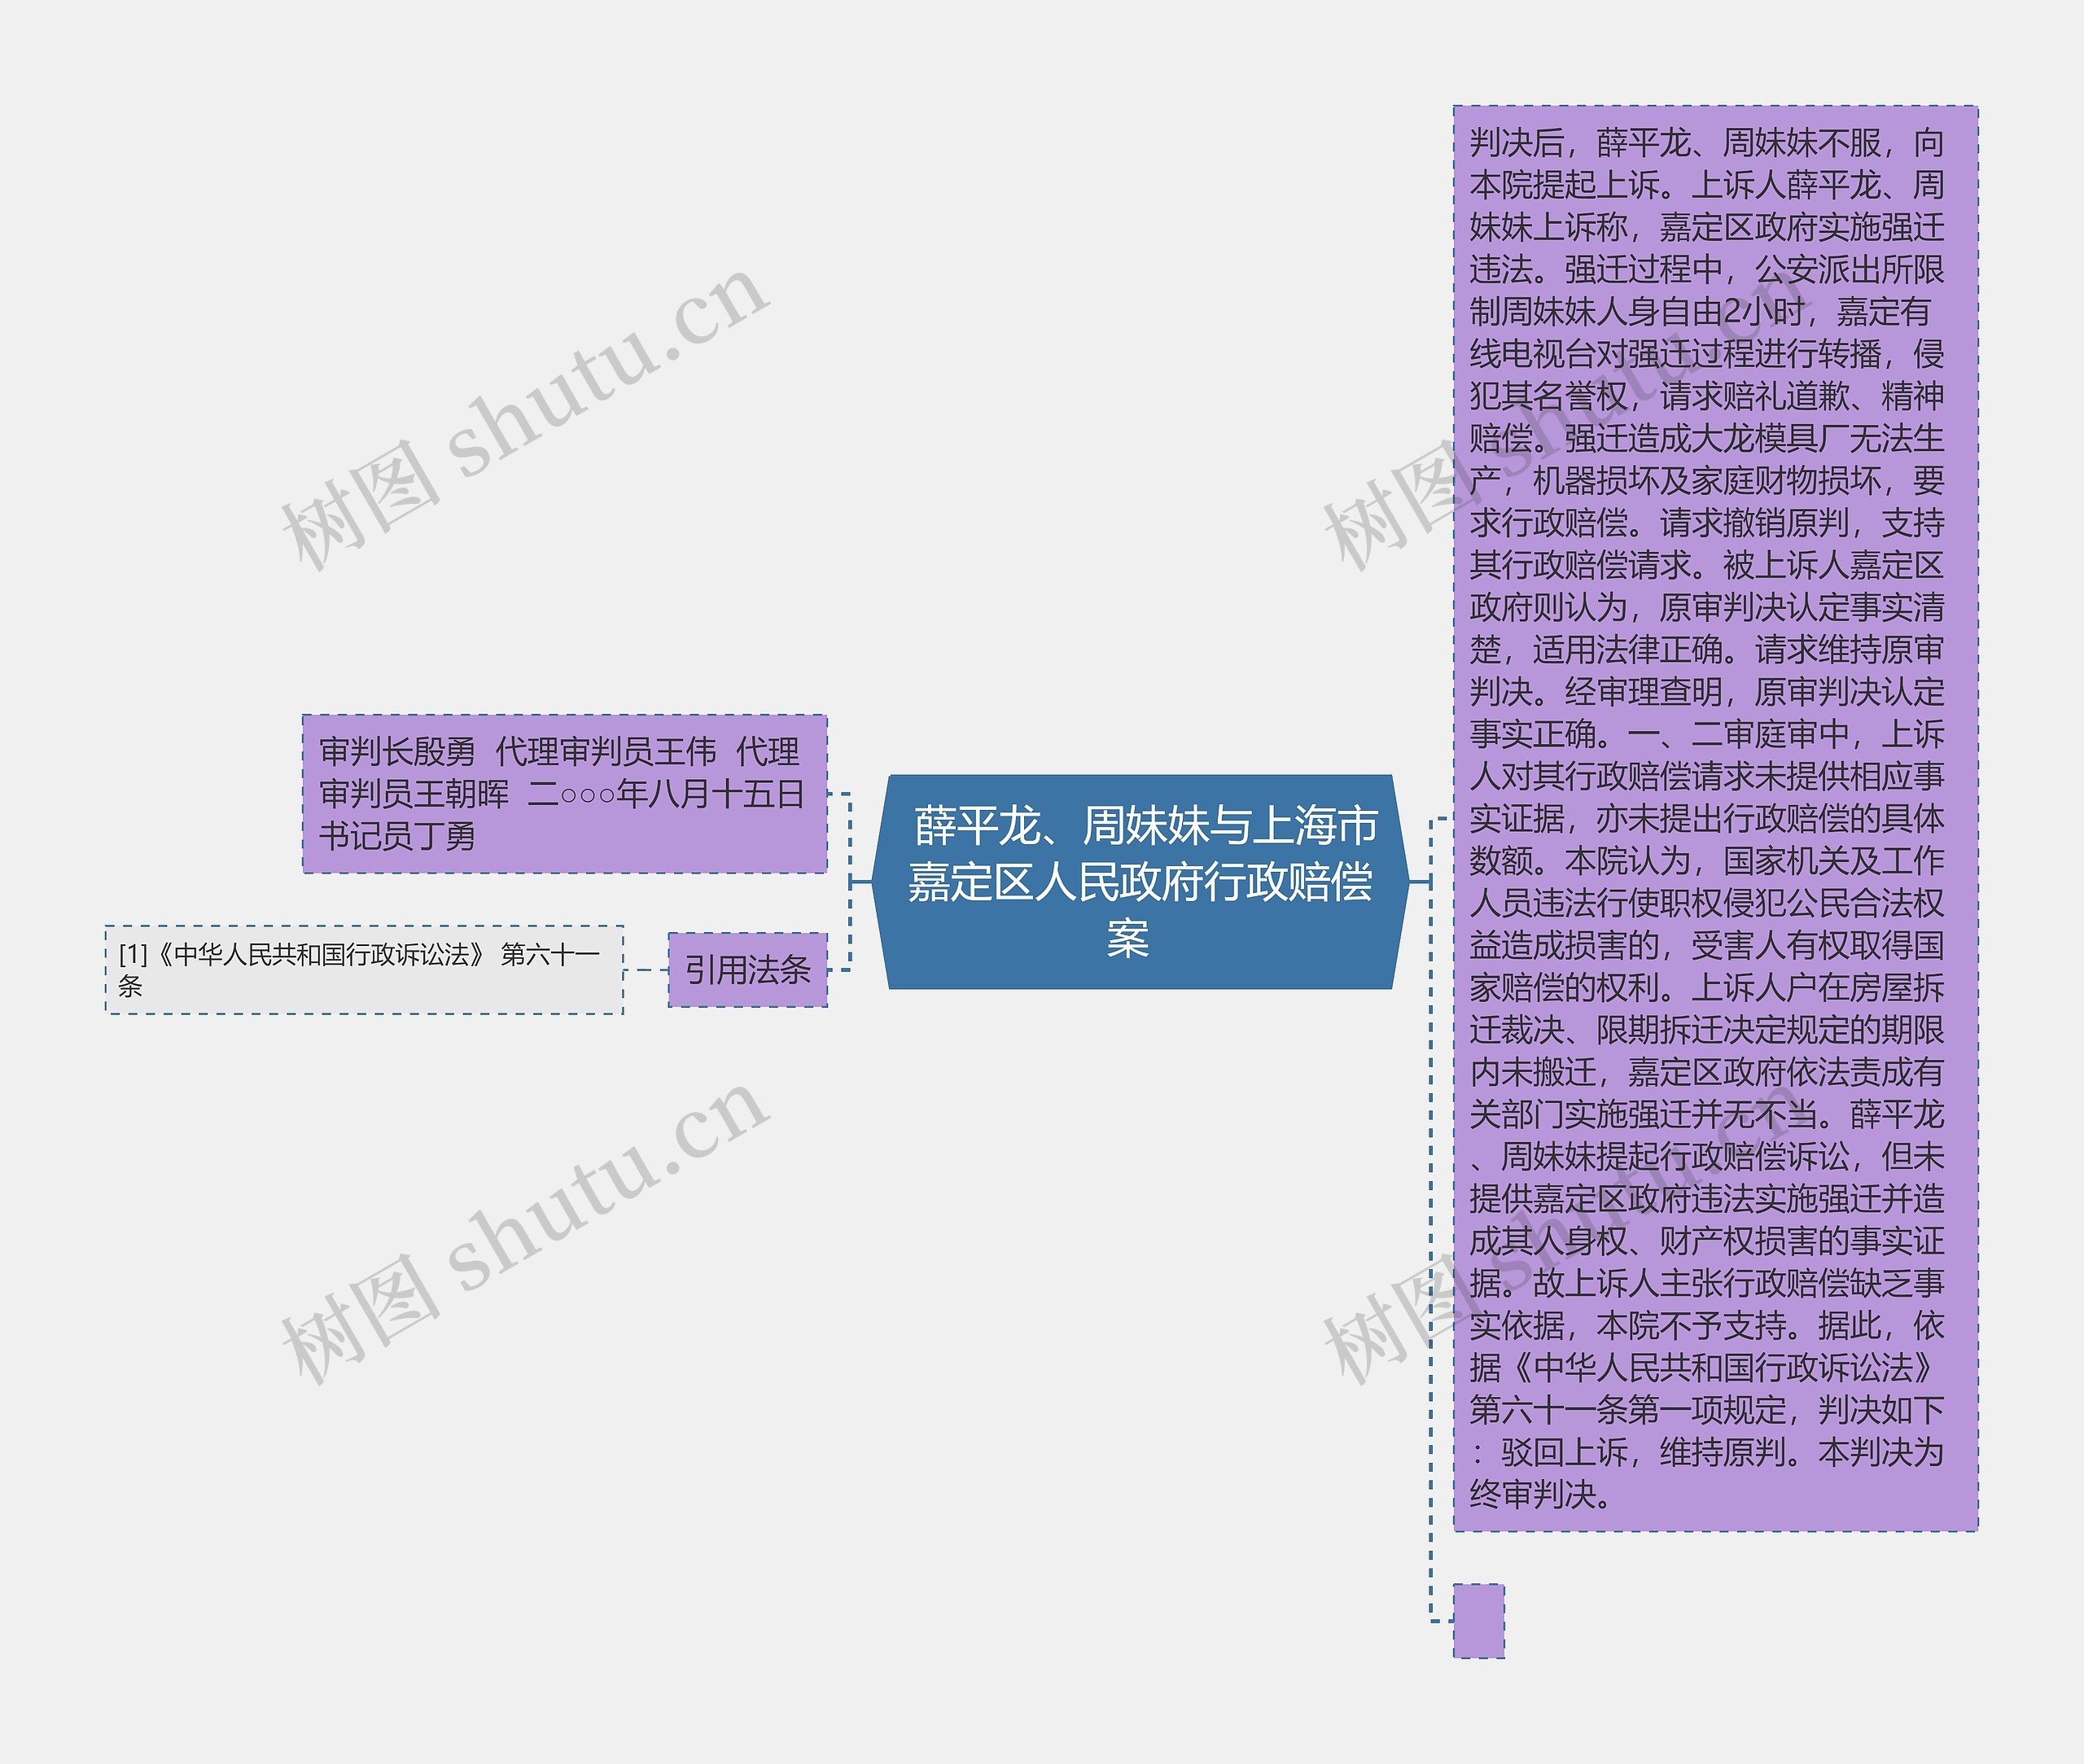  薛平龙、周妹妹与上海市嘉定区人民政府行政赔偿案  